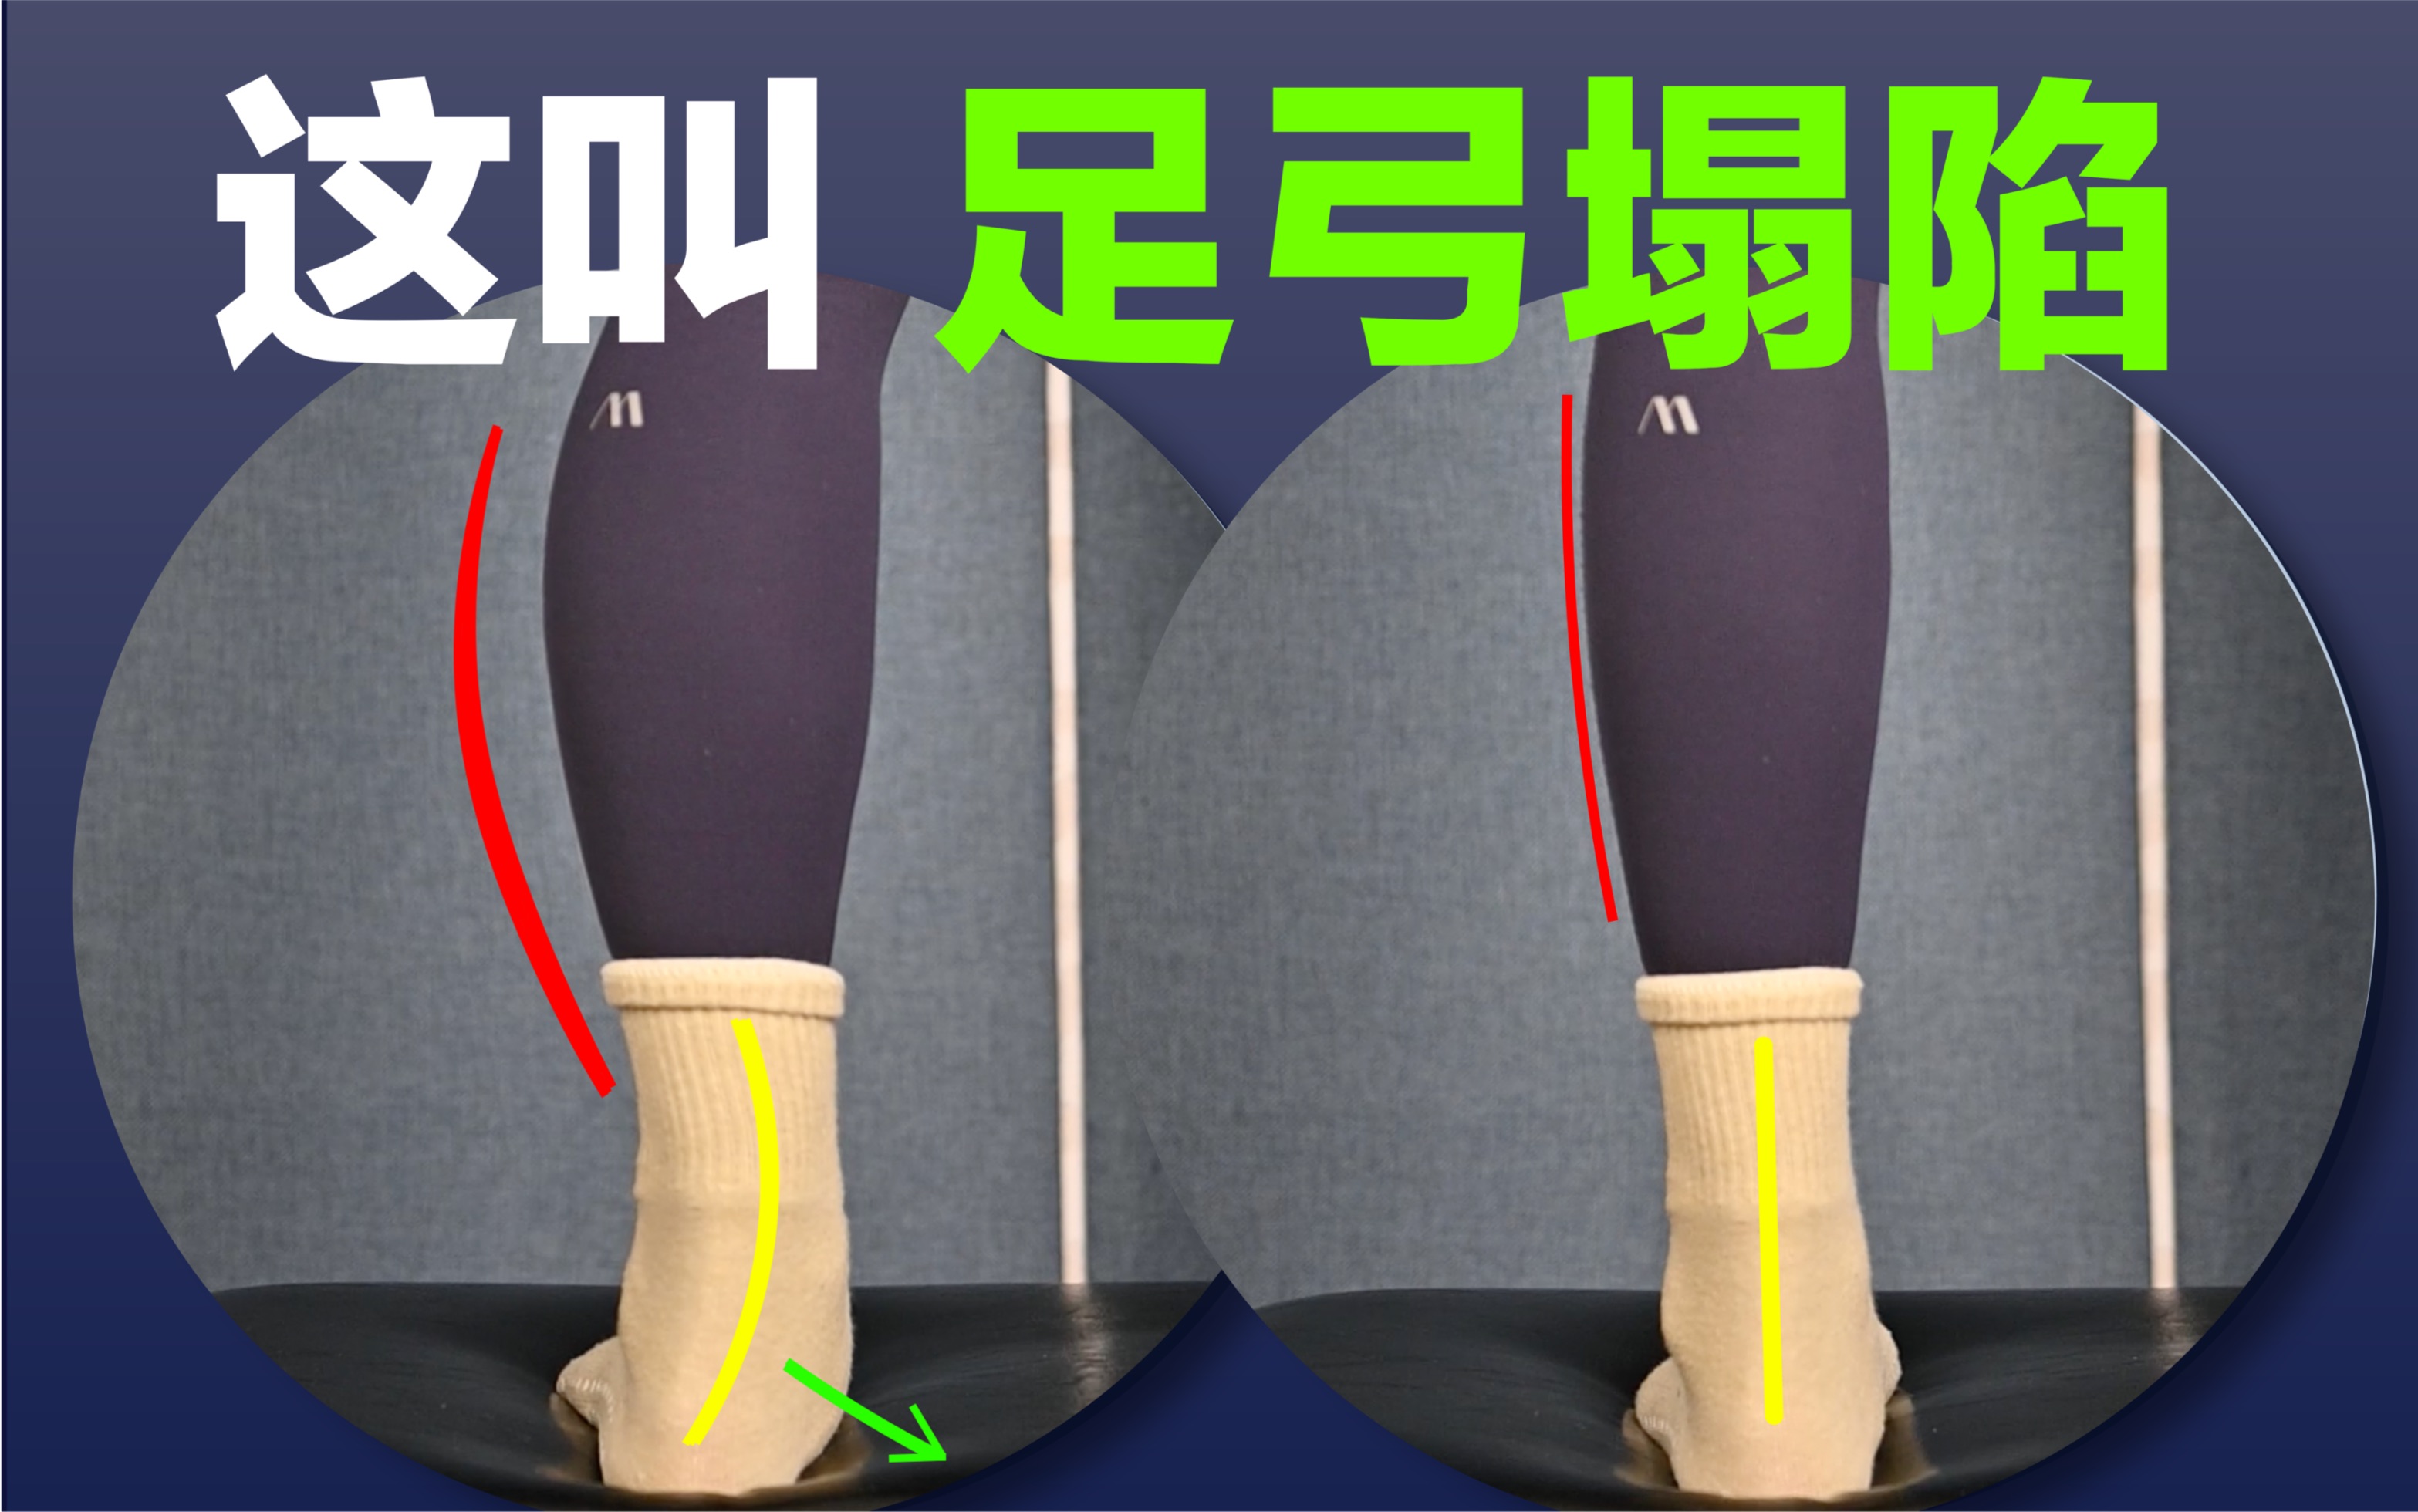 【一个动作矫正足弓】小腿外翻的原因是足弓塌陷